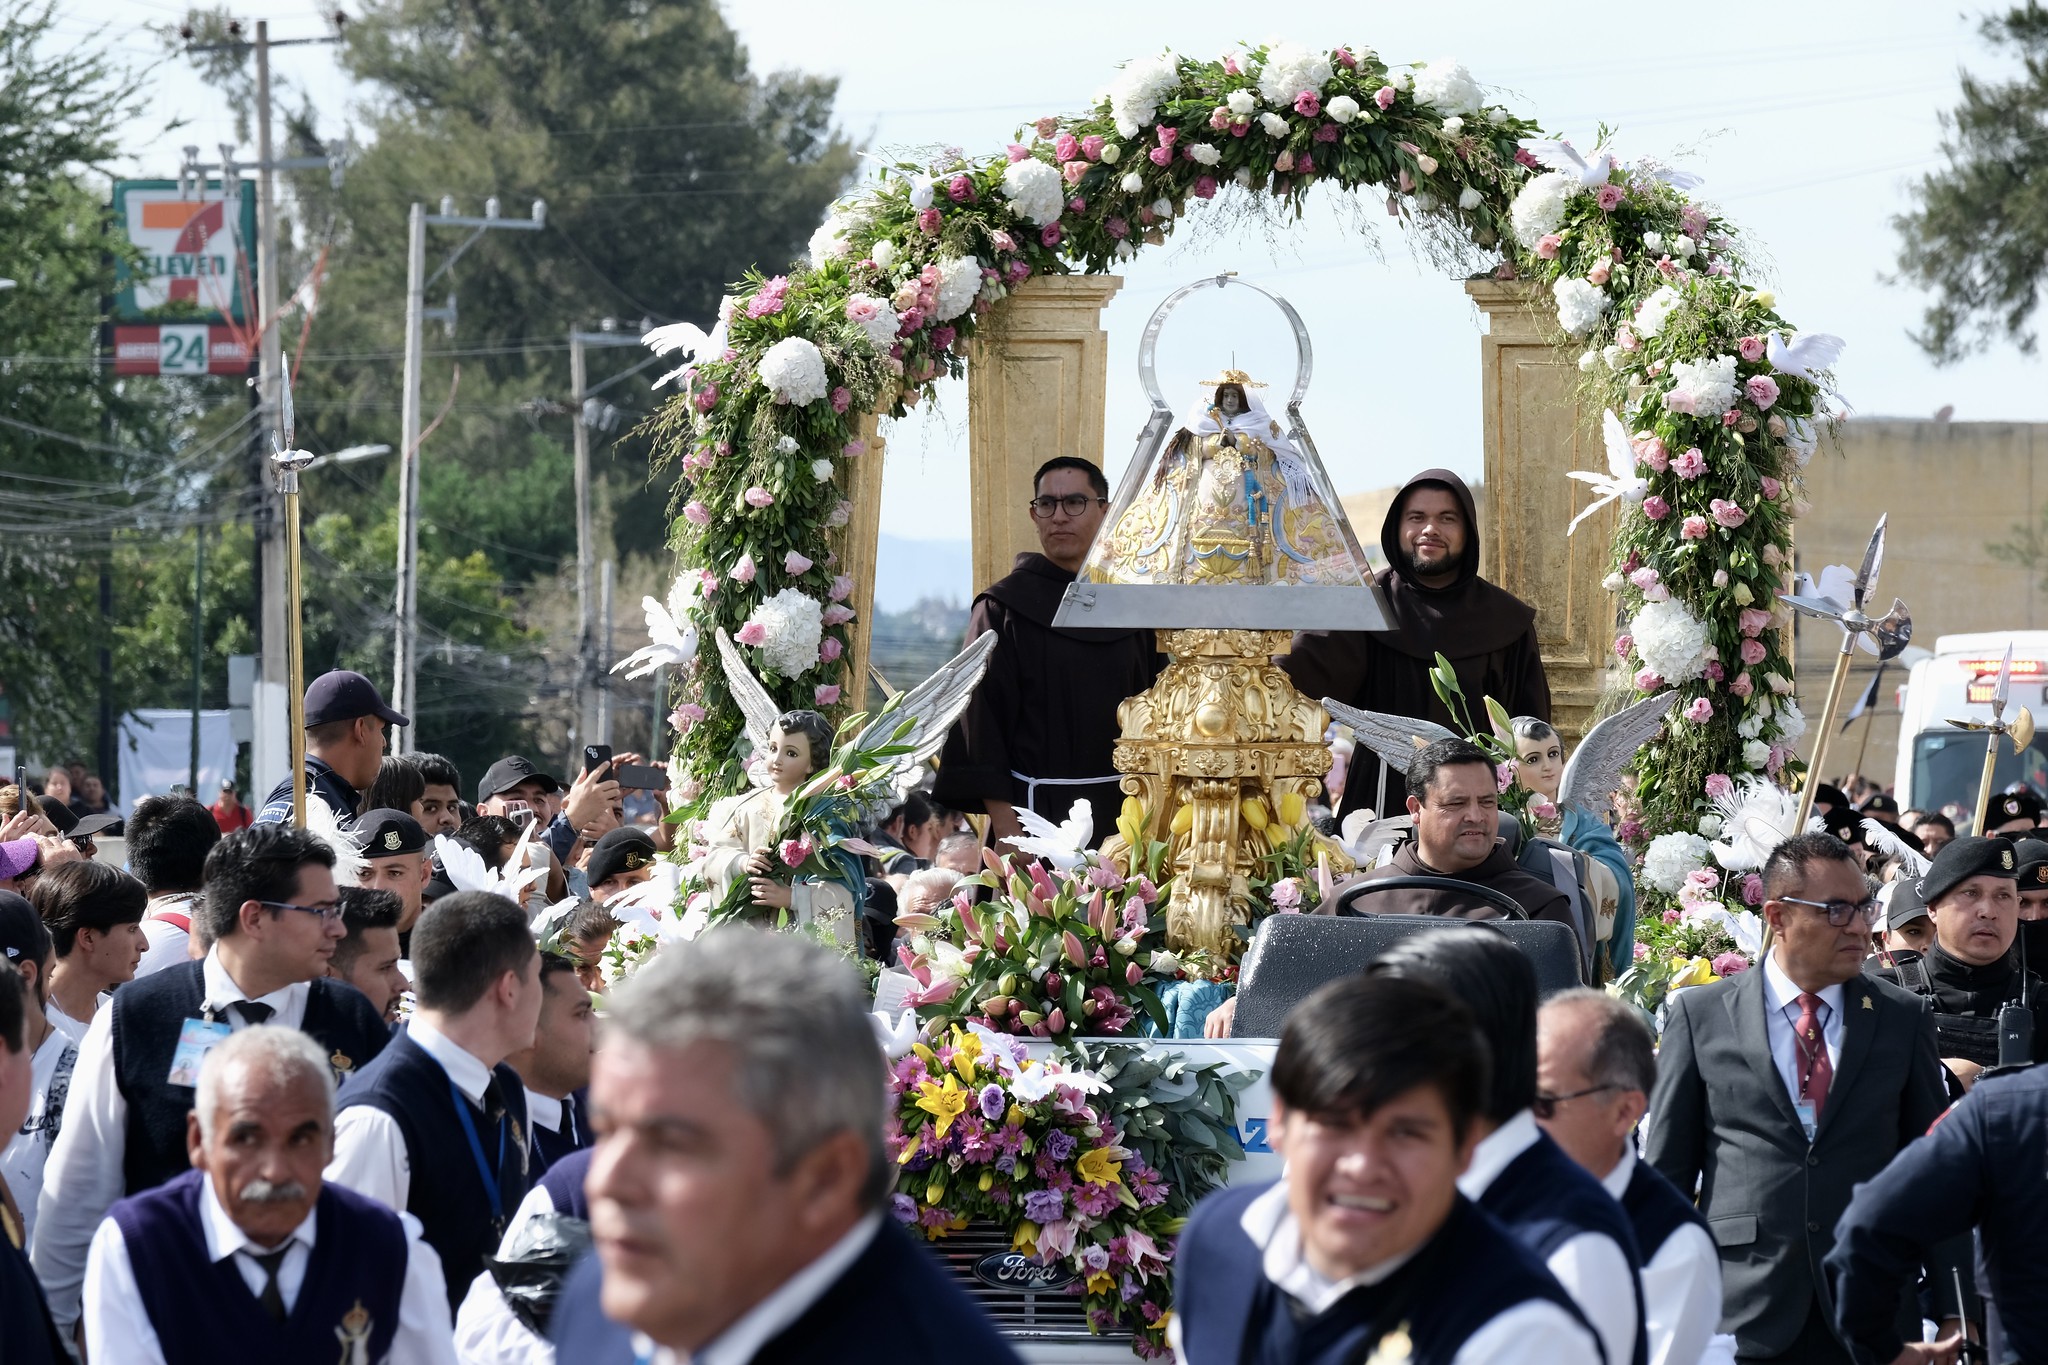 Este año, la Romería promete ser una experiencia inolvidable para los más de 2 millones de fieles que se esperan en Guadalajara y Zapopan